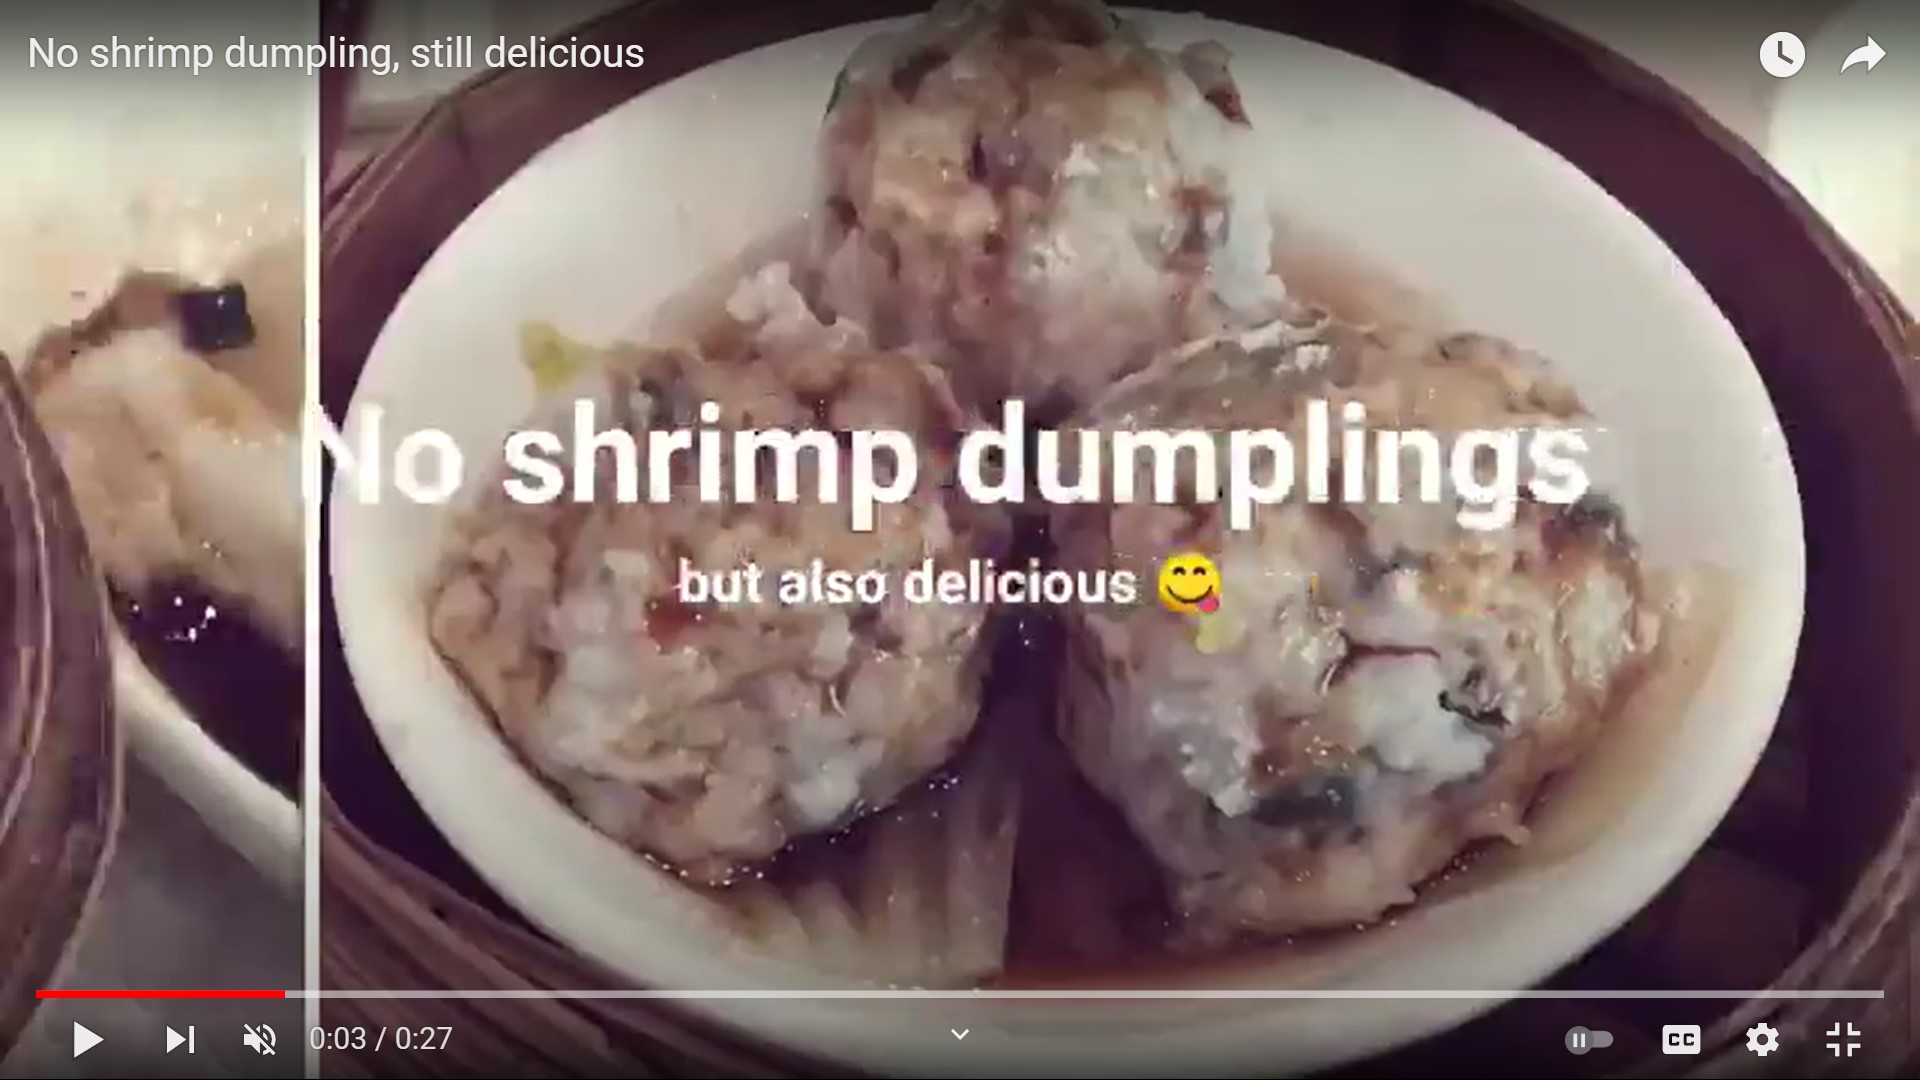 Frank's "No shrimp dumpling, still delicious" snapshots video